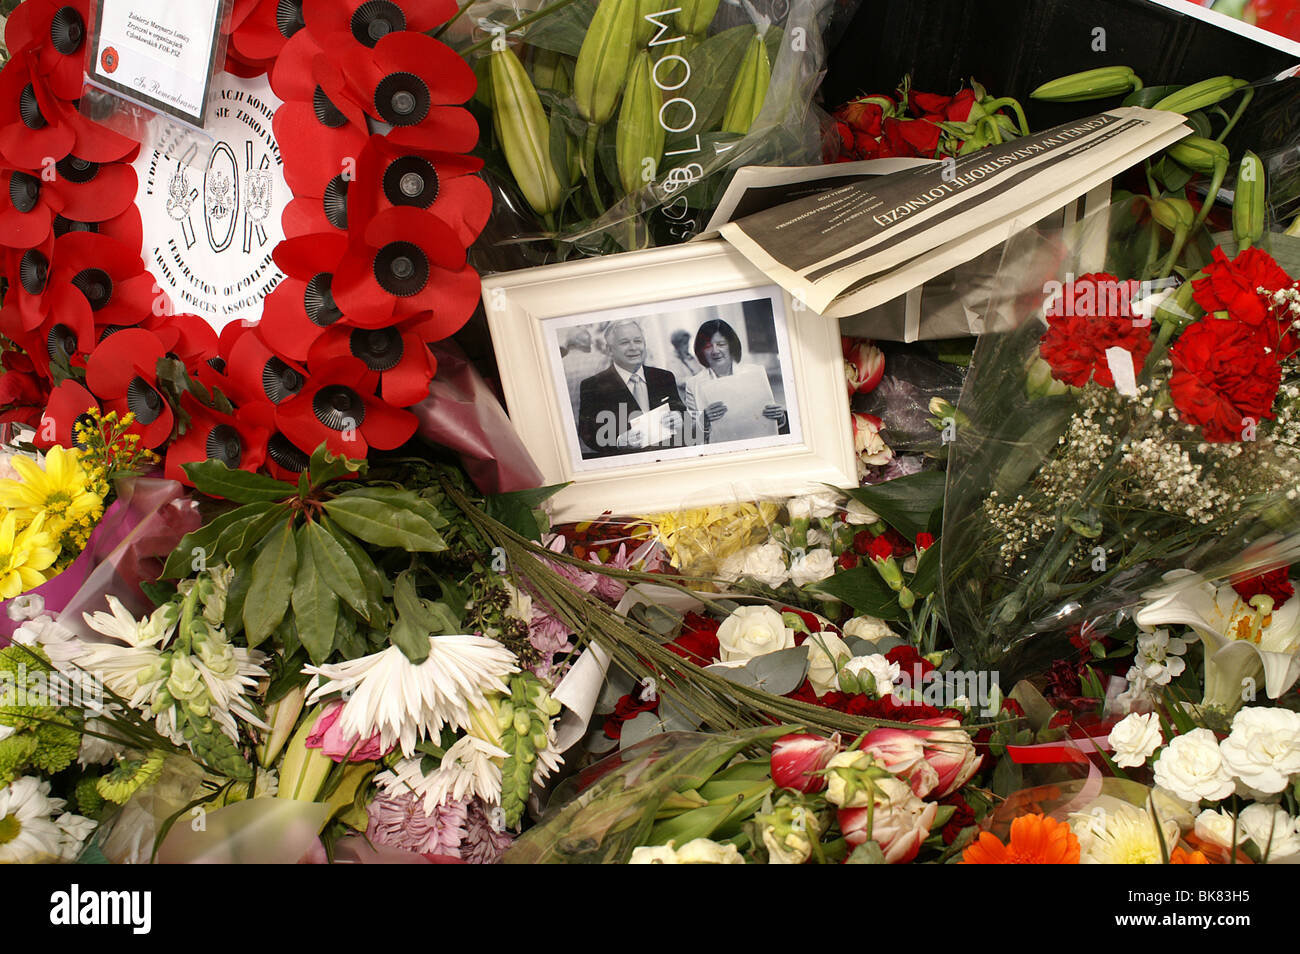 Lech und Maria Kaczynski Blume Schrein nach ihrem Flugzeugabsturz Stockfoto